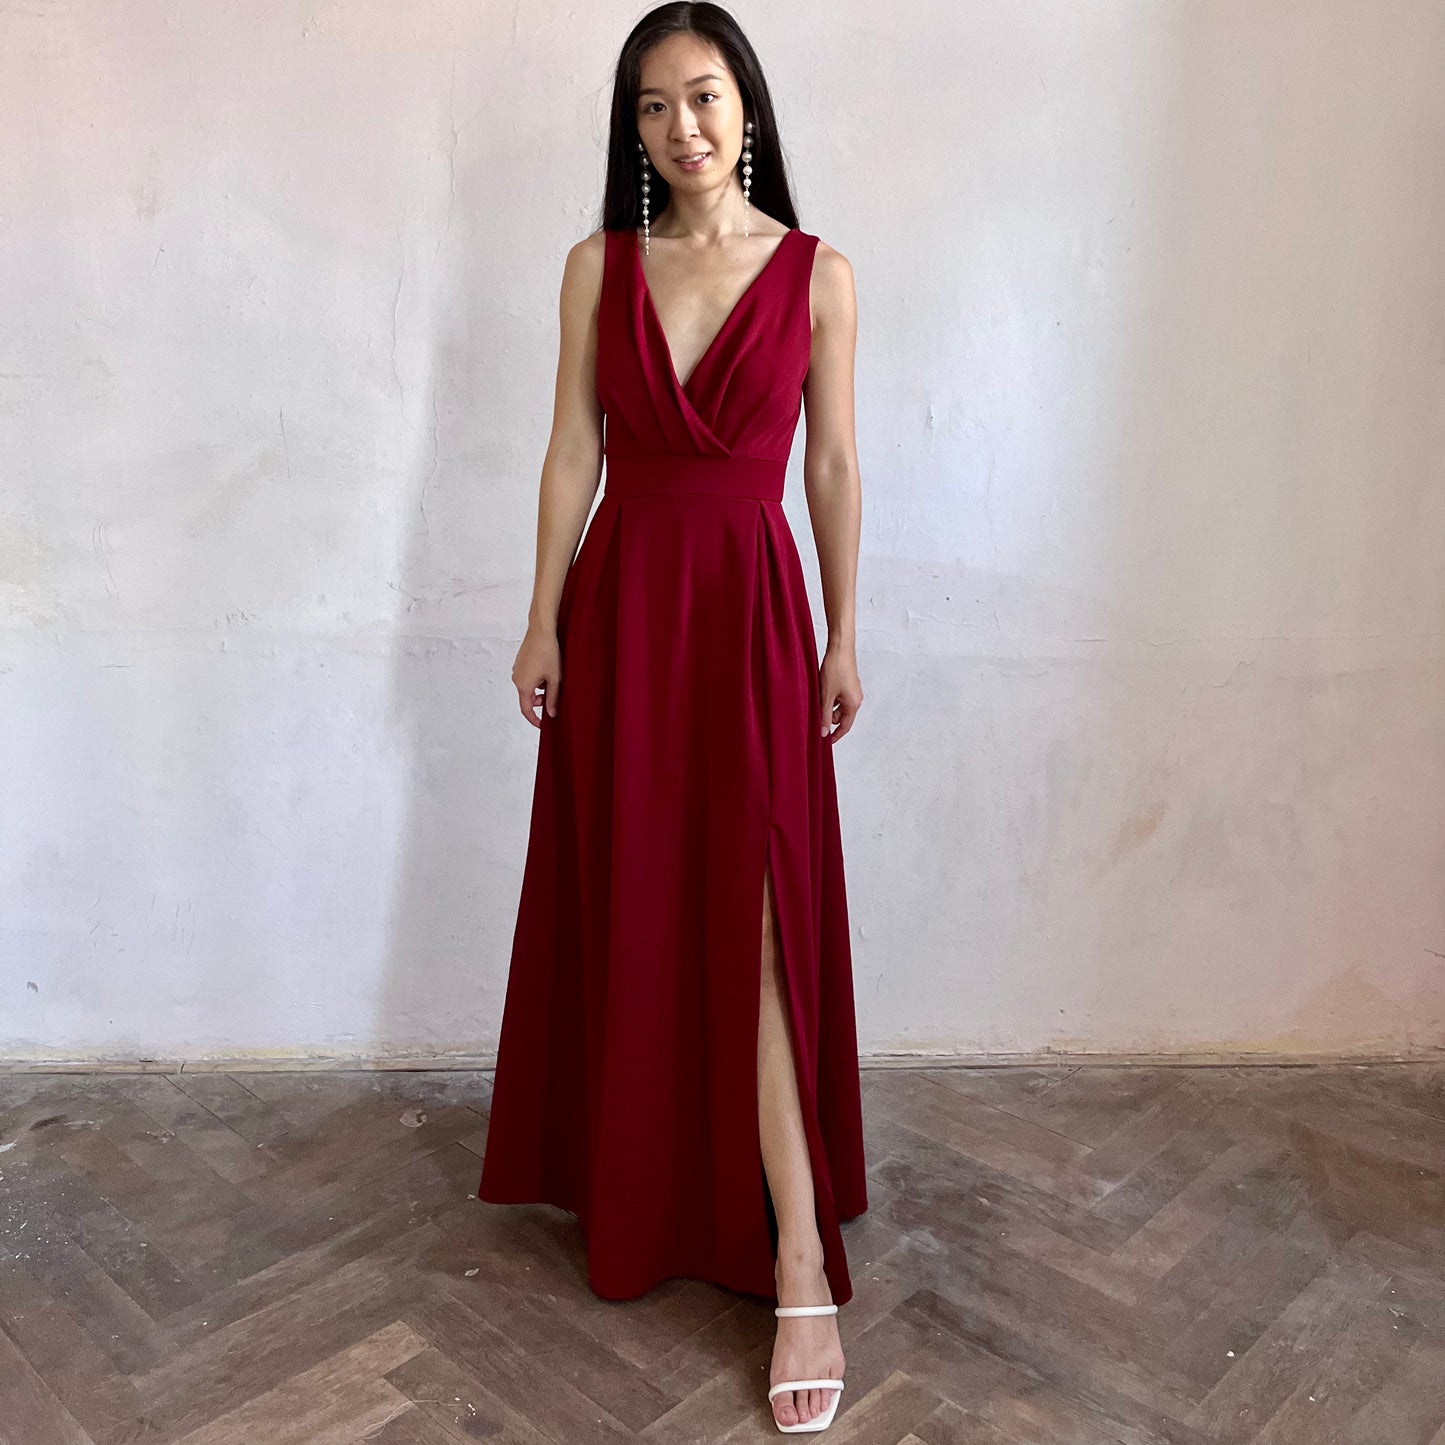 Modelka asijského původu pózující zepředu oblečená v tmavě vínových společenských šatech